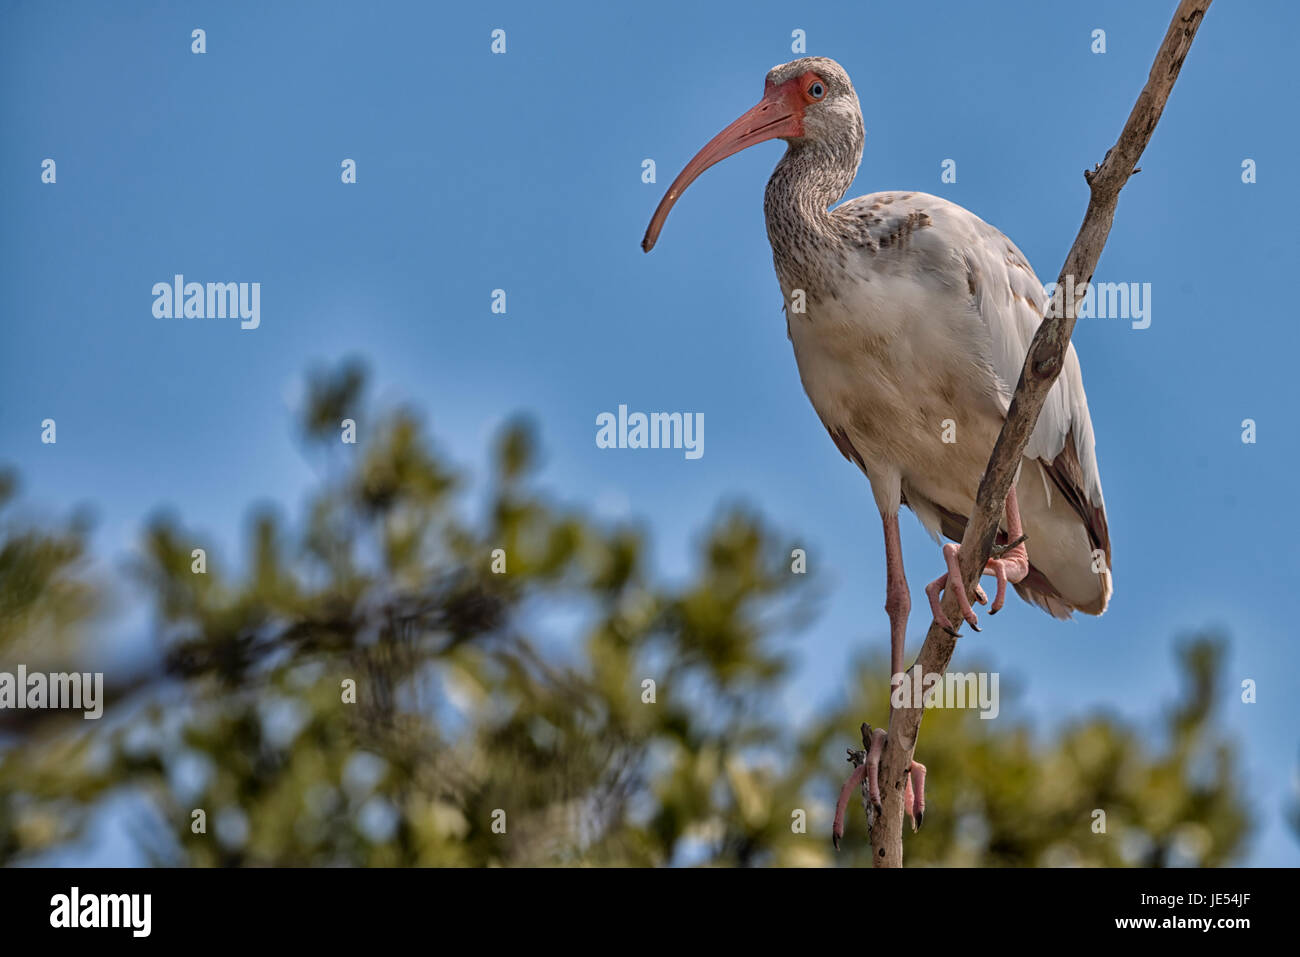 L'Ibis bianco americano (Eudocimus albus) è un uccello comune in Florida. Non c'è da meravigliarsi se questo splendido ibis giovanile si trova in una filiale in una foresta di mangrovie vicino al Florida Key Wild Bird Rehabilitation Center a Key Largo. Foto Stock